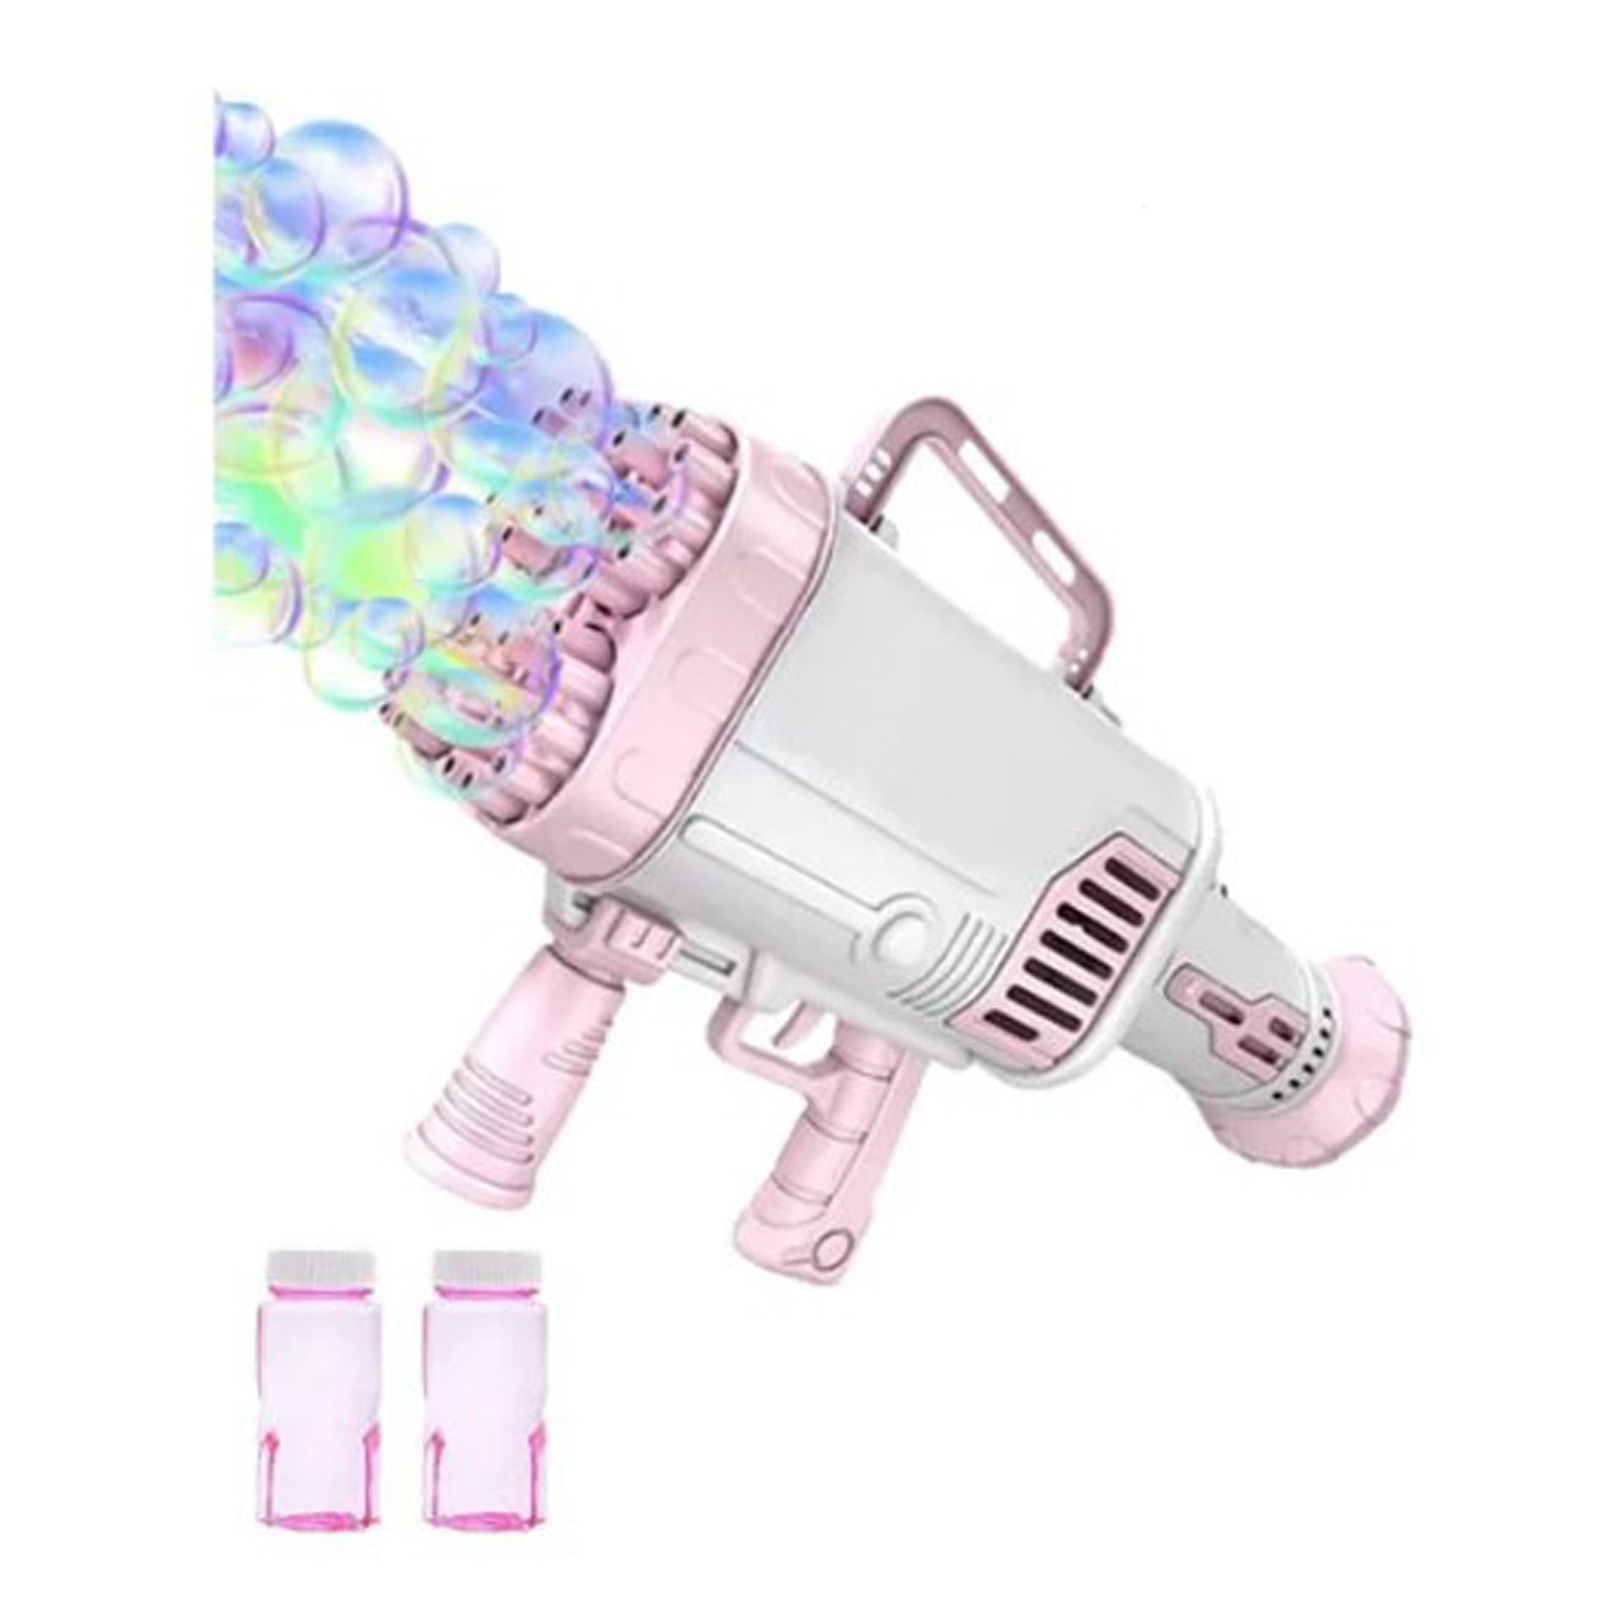 Пушка-Генератор мыльных пузырей Market toys lab розовый генератор мыльных пузырей belsis 4790